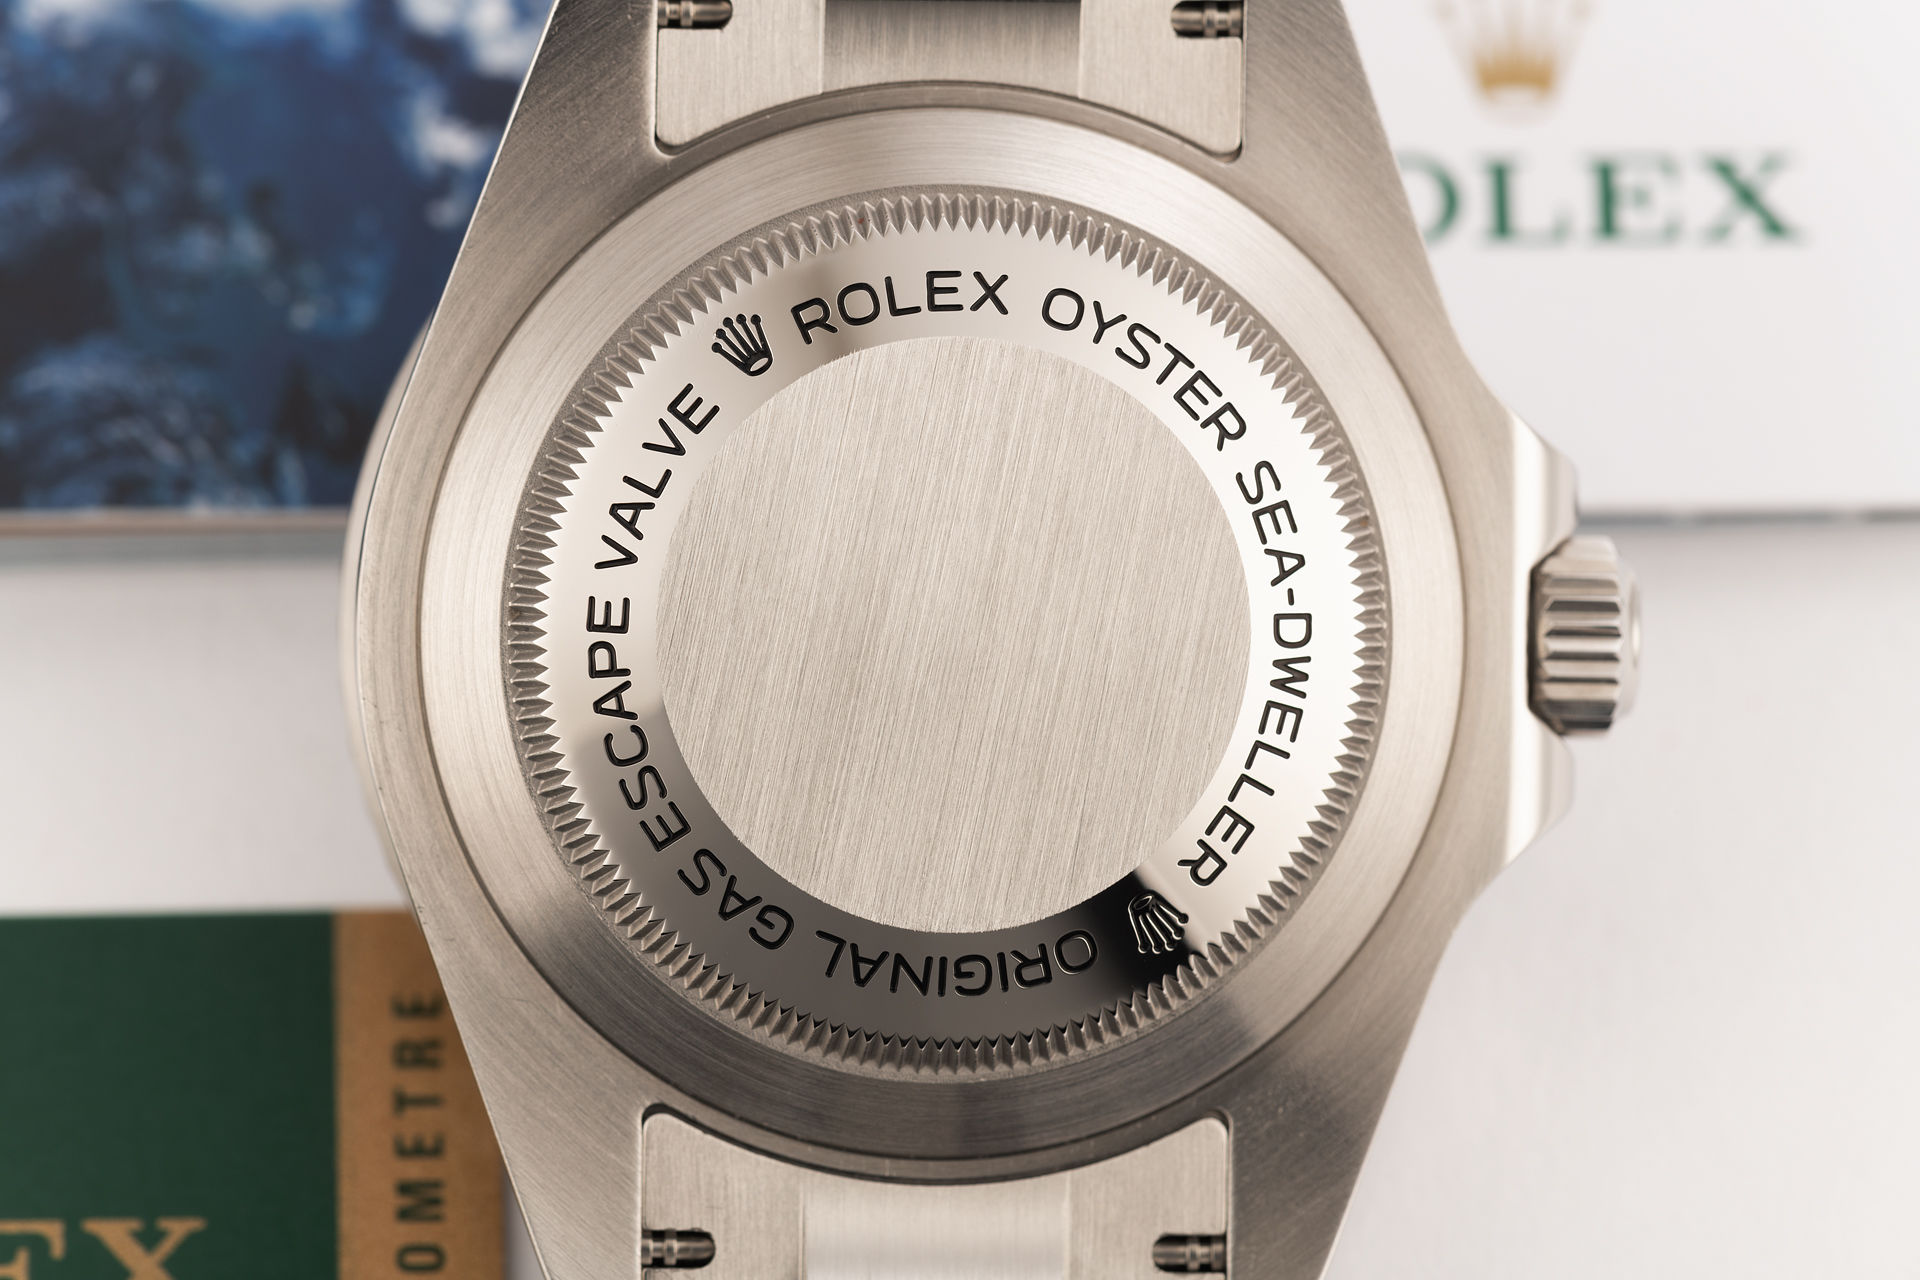 ref 116600 | Under Rolex Warranty | Rolex Sea-Dweller 4000